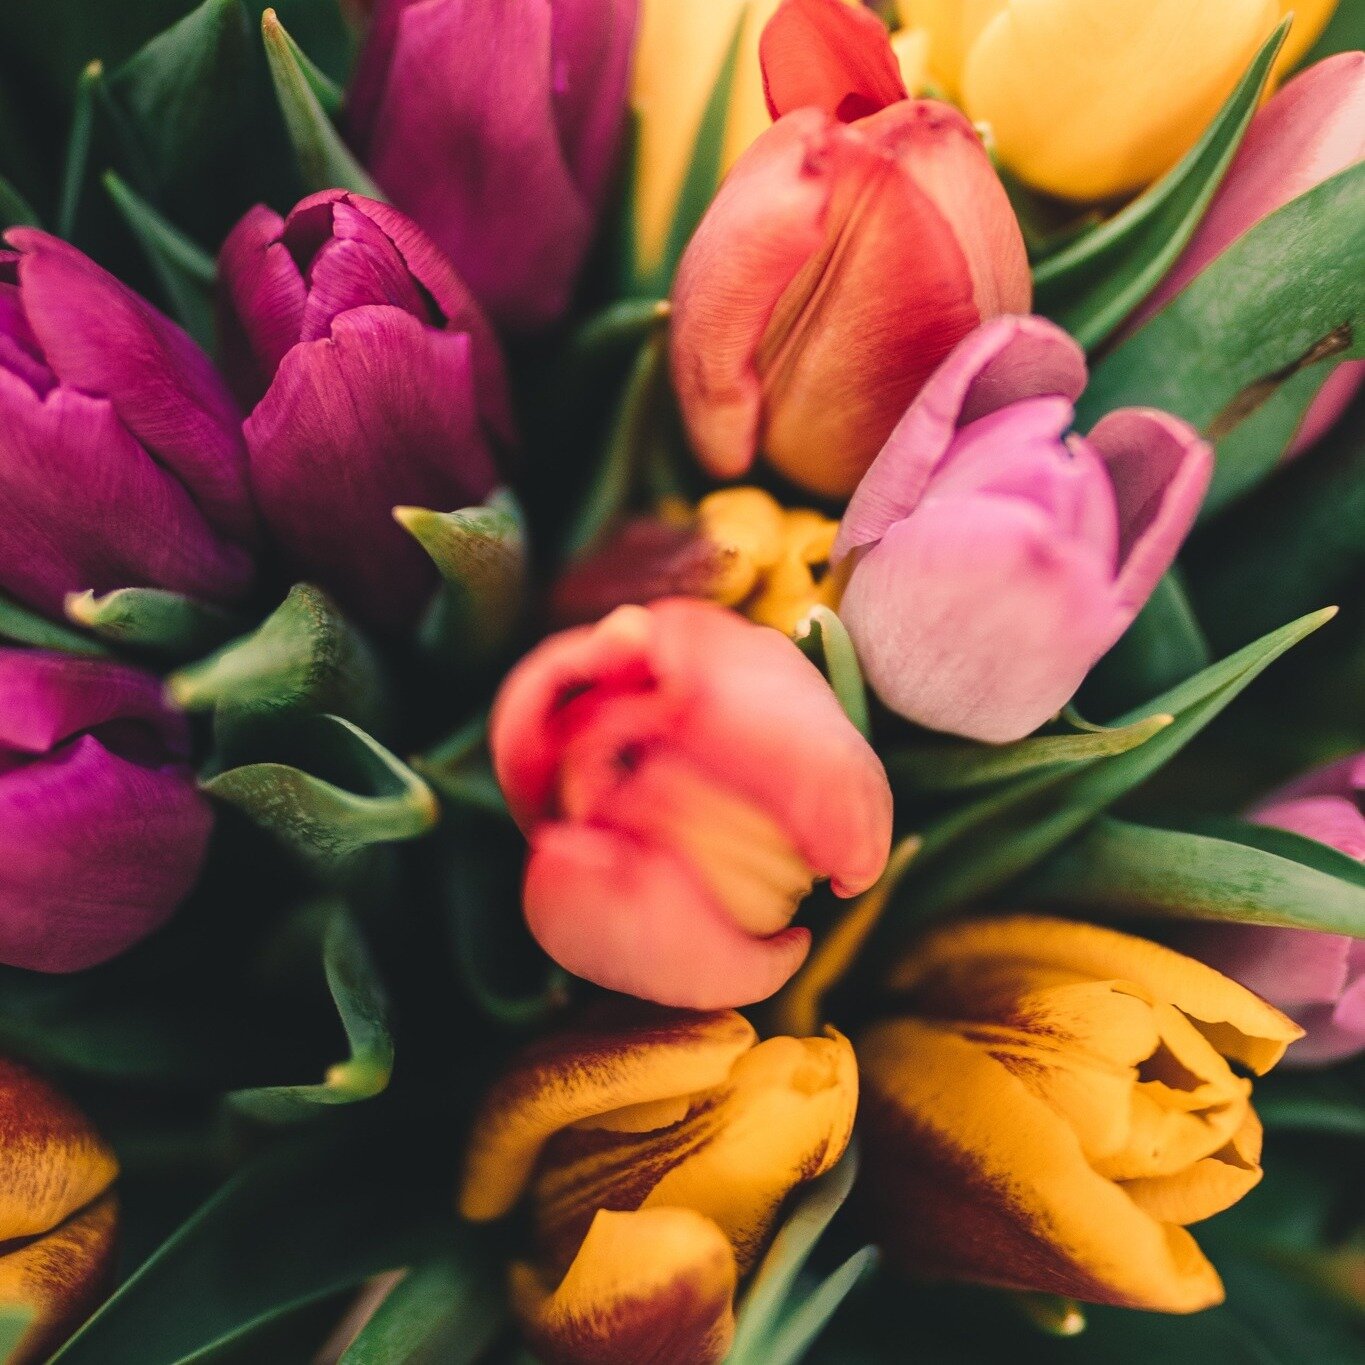 De plus en plus de fleurs commencent &agrave; &eacute;clore dans les jardins, et cela pour le plus grand bonheur de notre nez 👃 Et vous, quelle est votre fleur pr&eacute;f&eacute;r&eacute;e ? 💐

#marketingolfactif  #olfaction #scentmarketing #creat